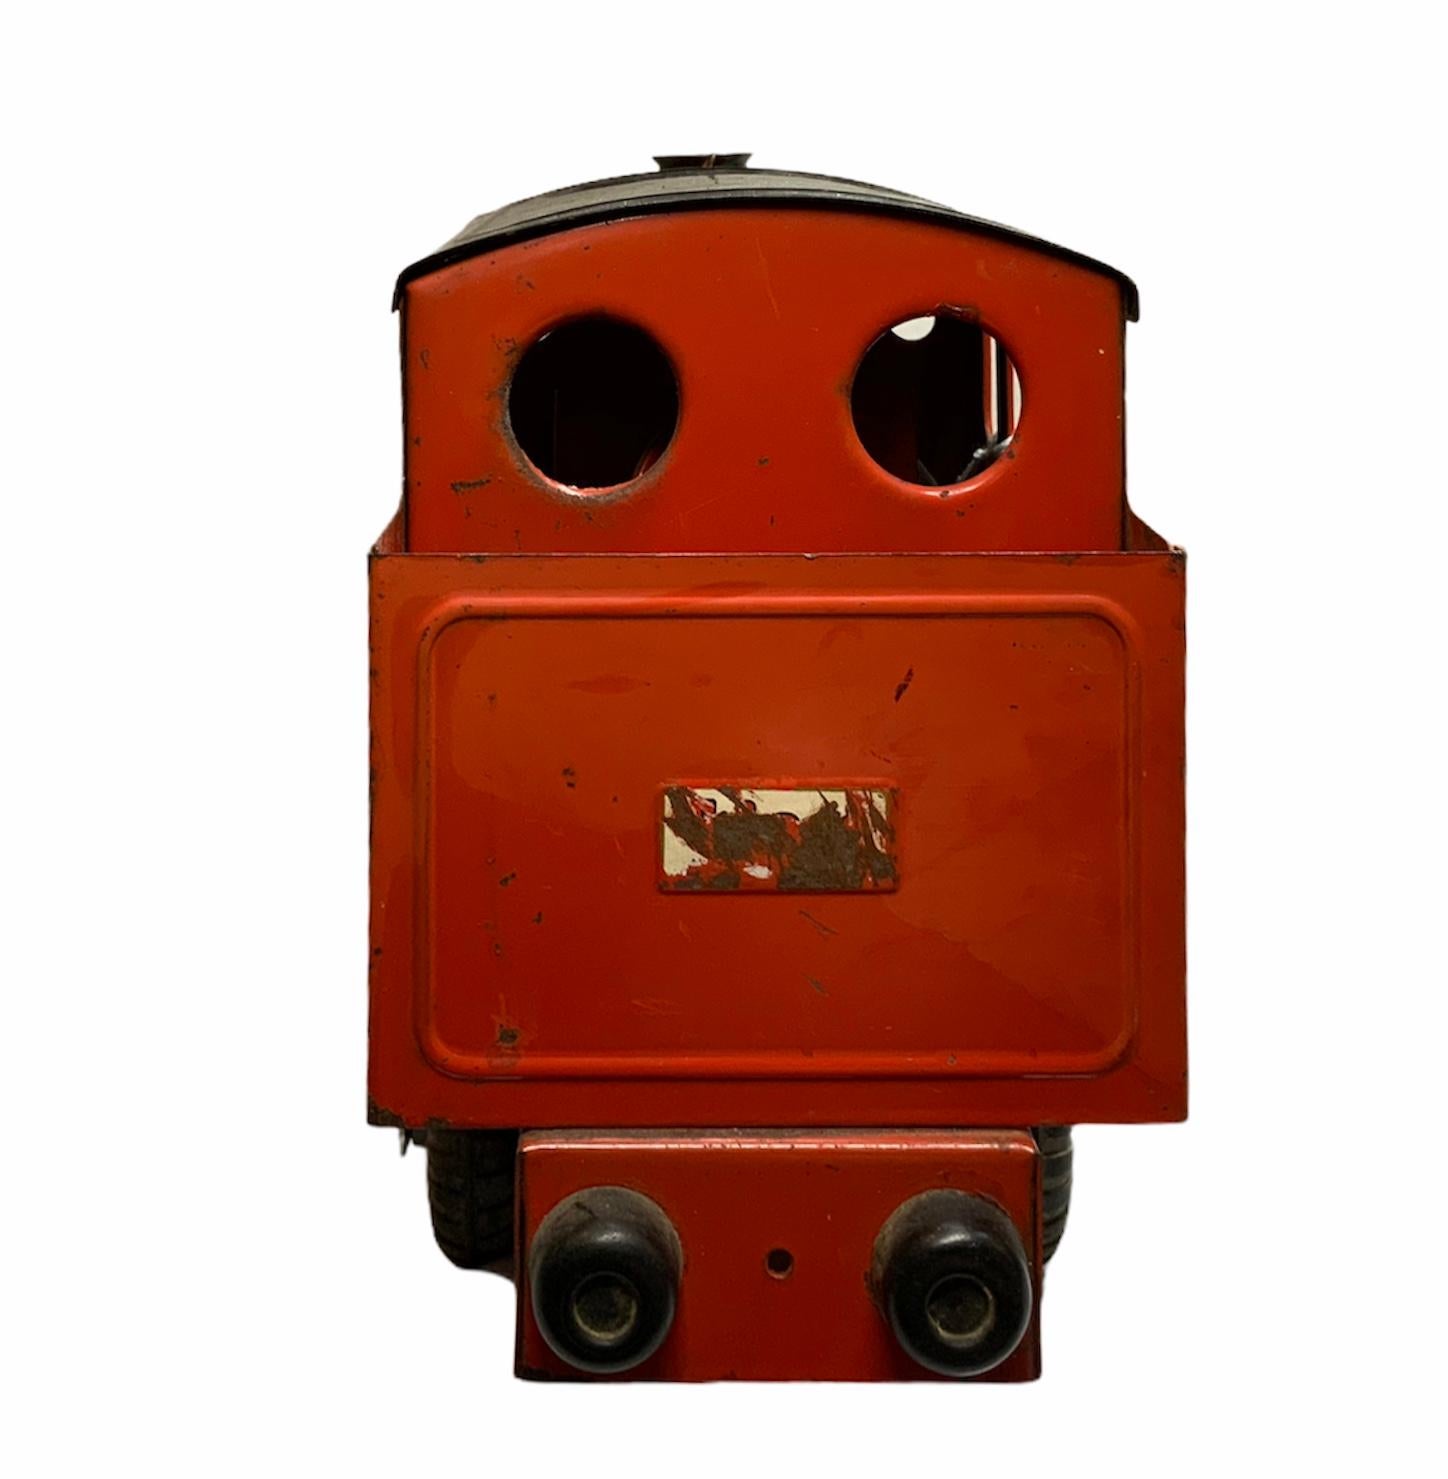 Dies ist eine helle orange und schwarze Farbe Zug-Dampflokomotiven Metall Spielzeug. Es hat vier schwarze Reifen und eine kleine silberne Metallglocke vorne oben auf der Fahrerkabine.